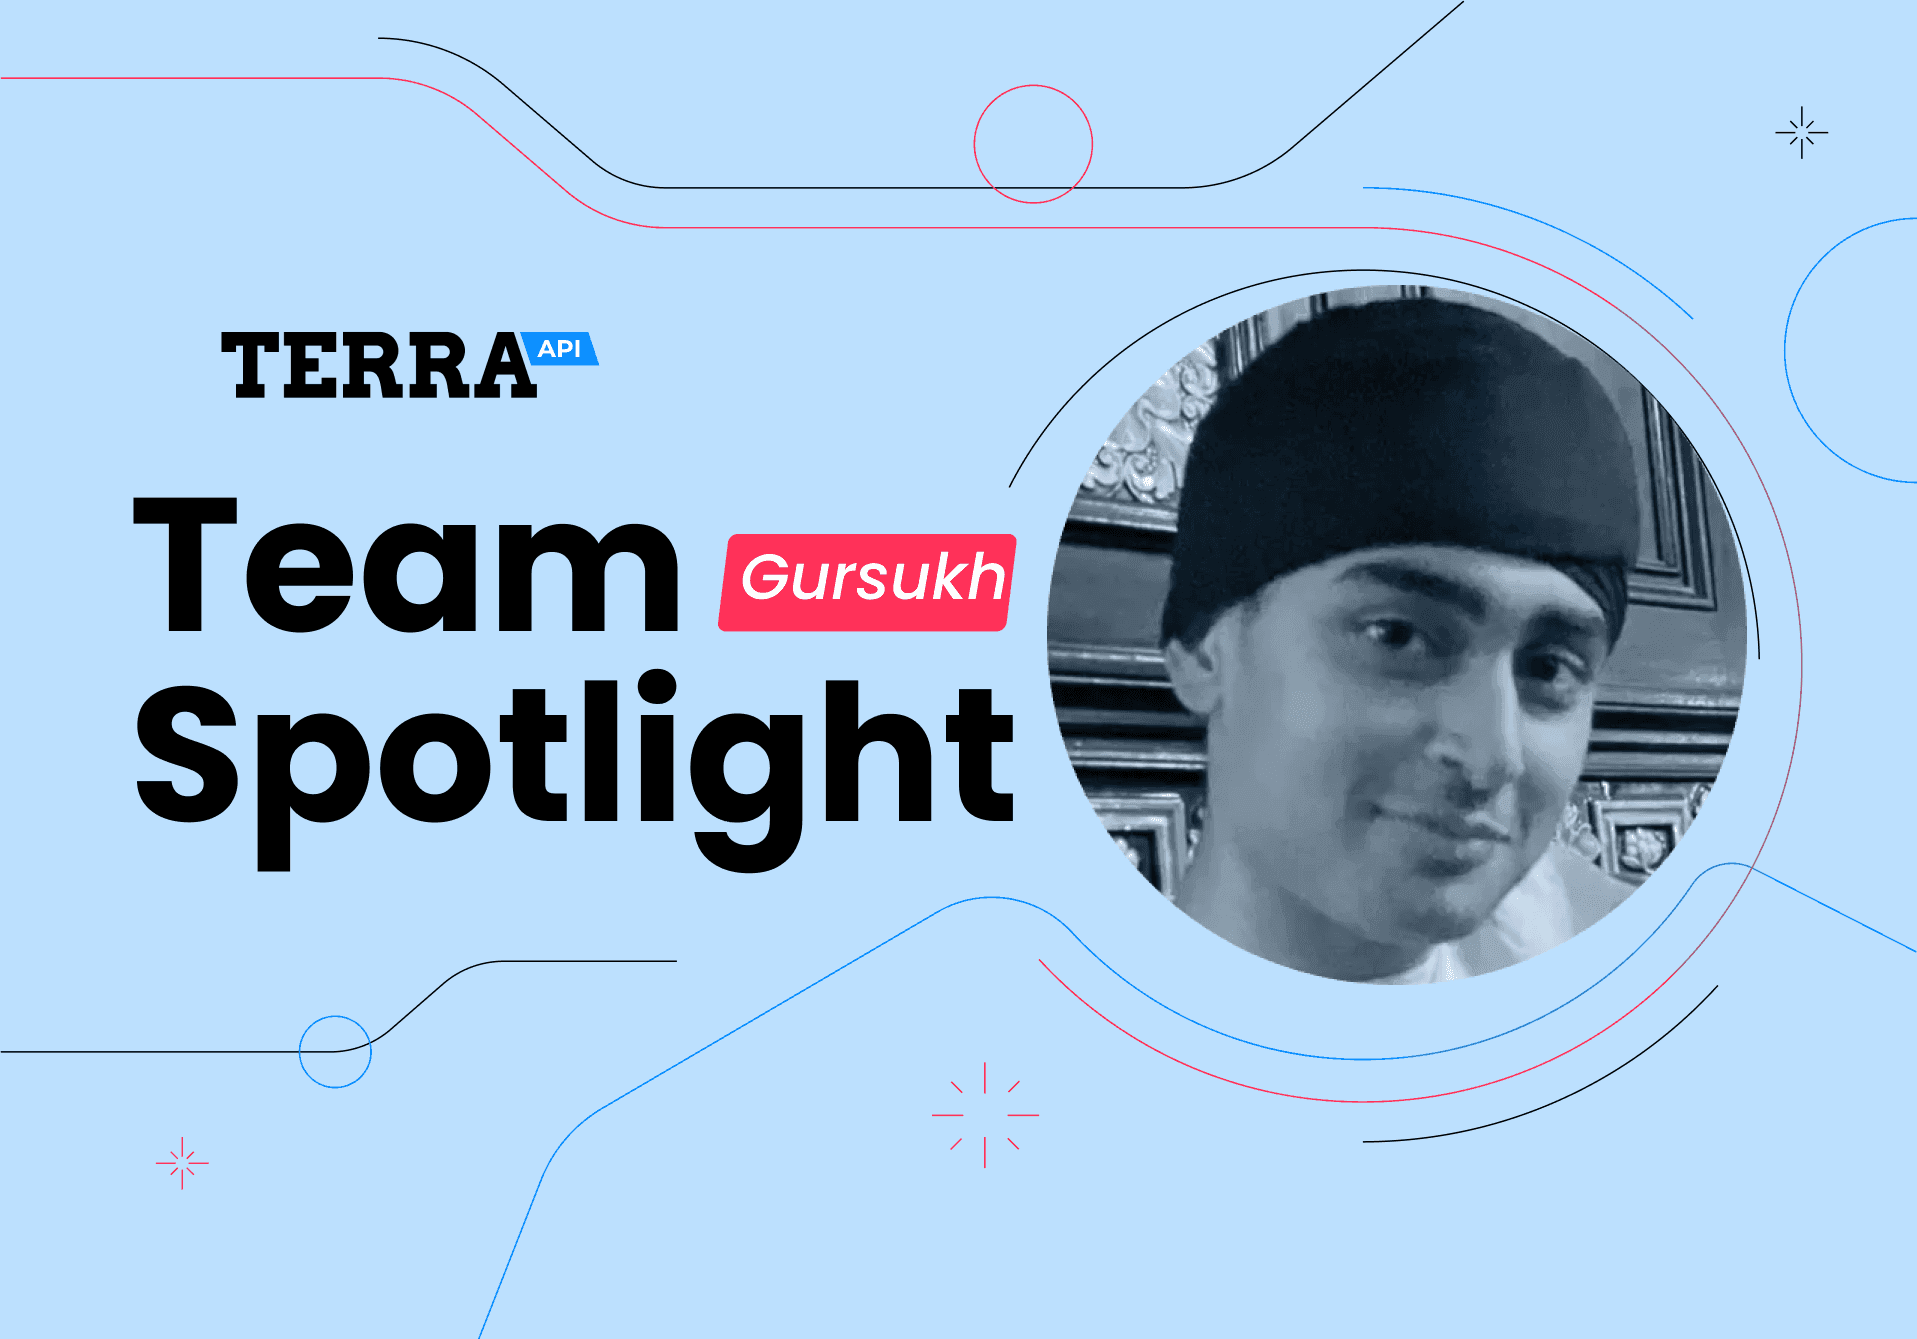 Terra Team Spotlight: Meet Gursukh